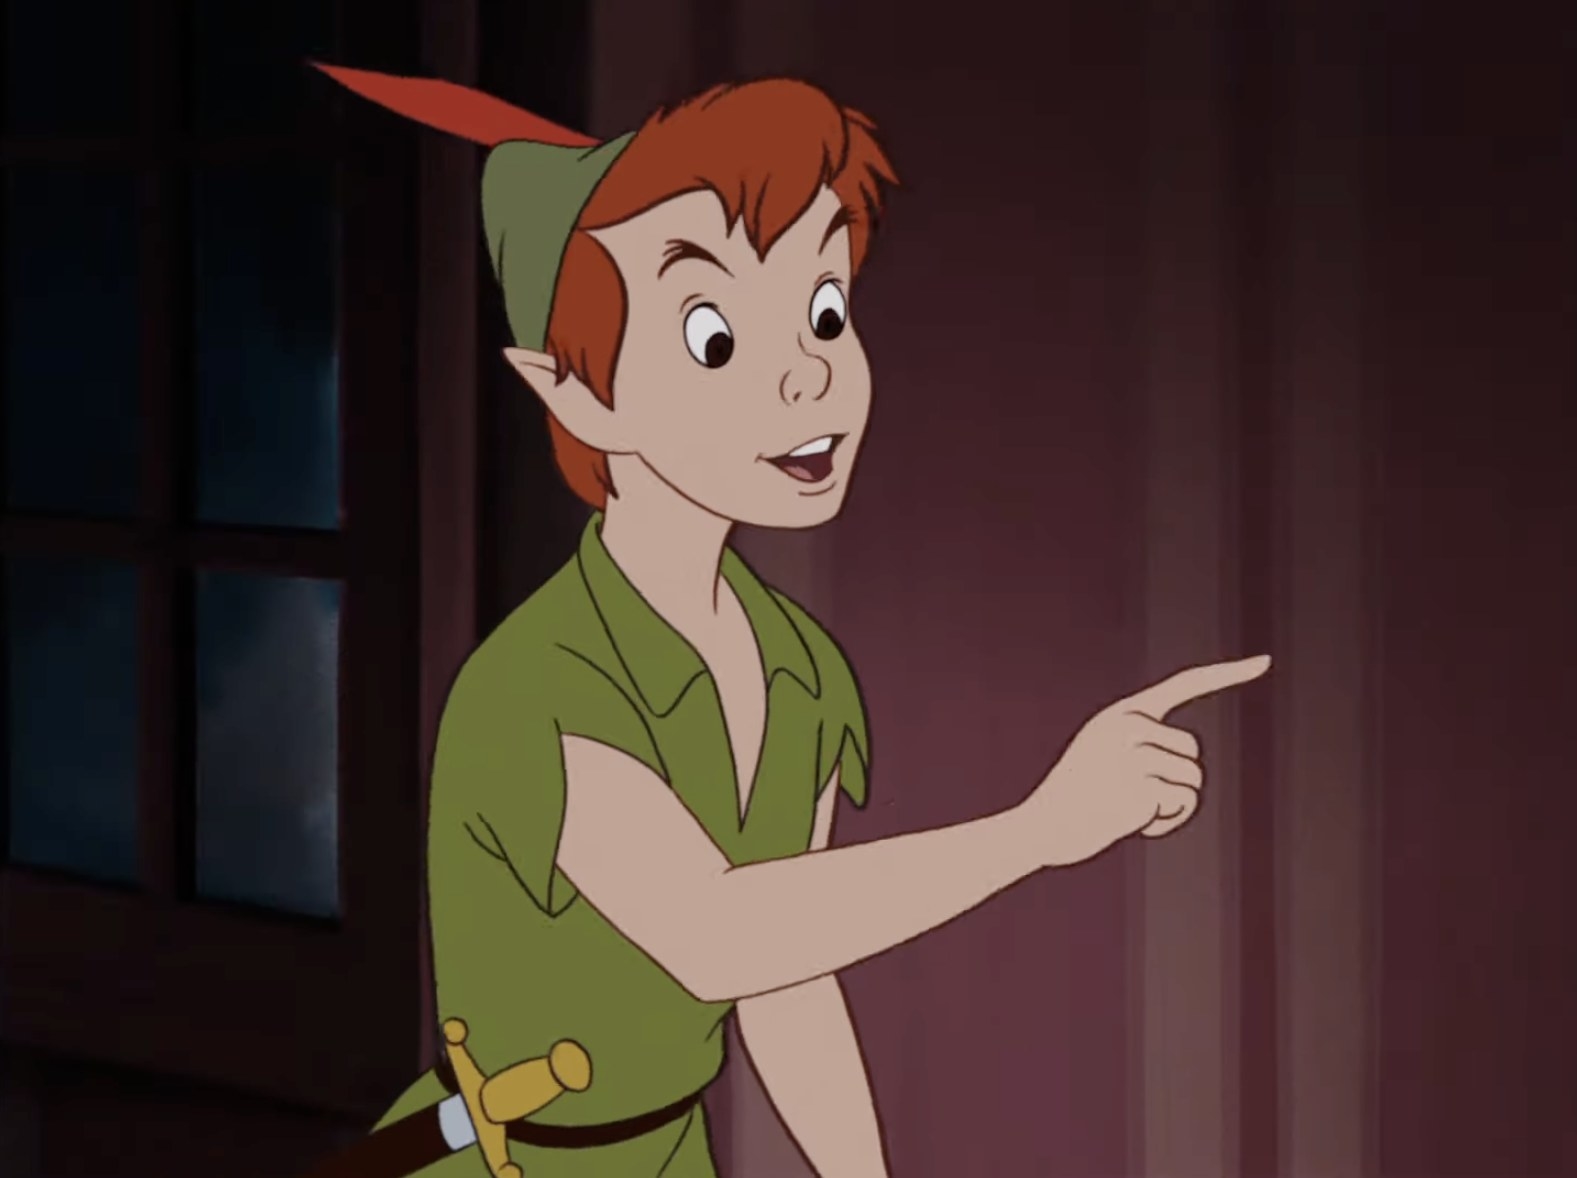 Peter Pan pointing